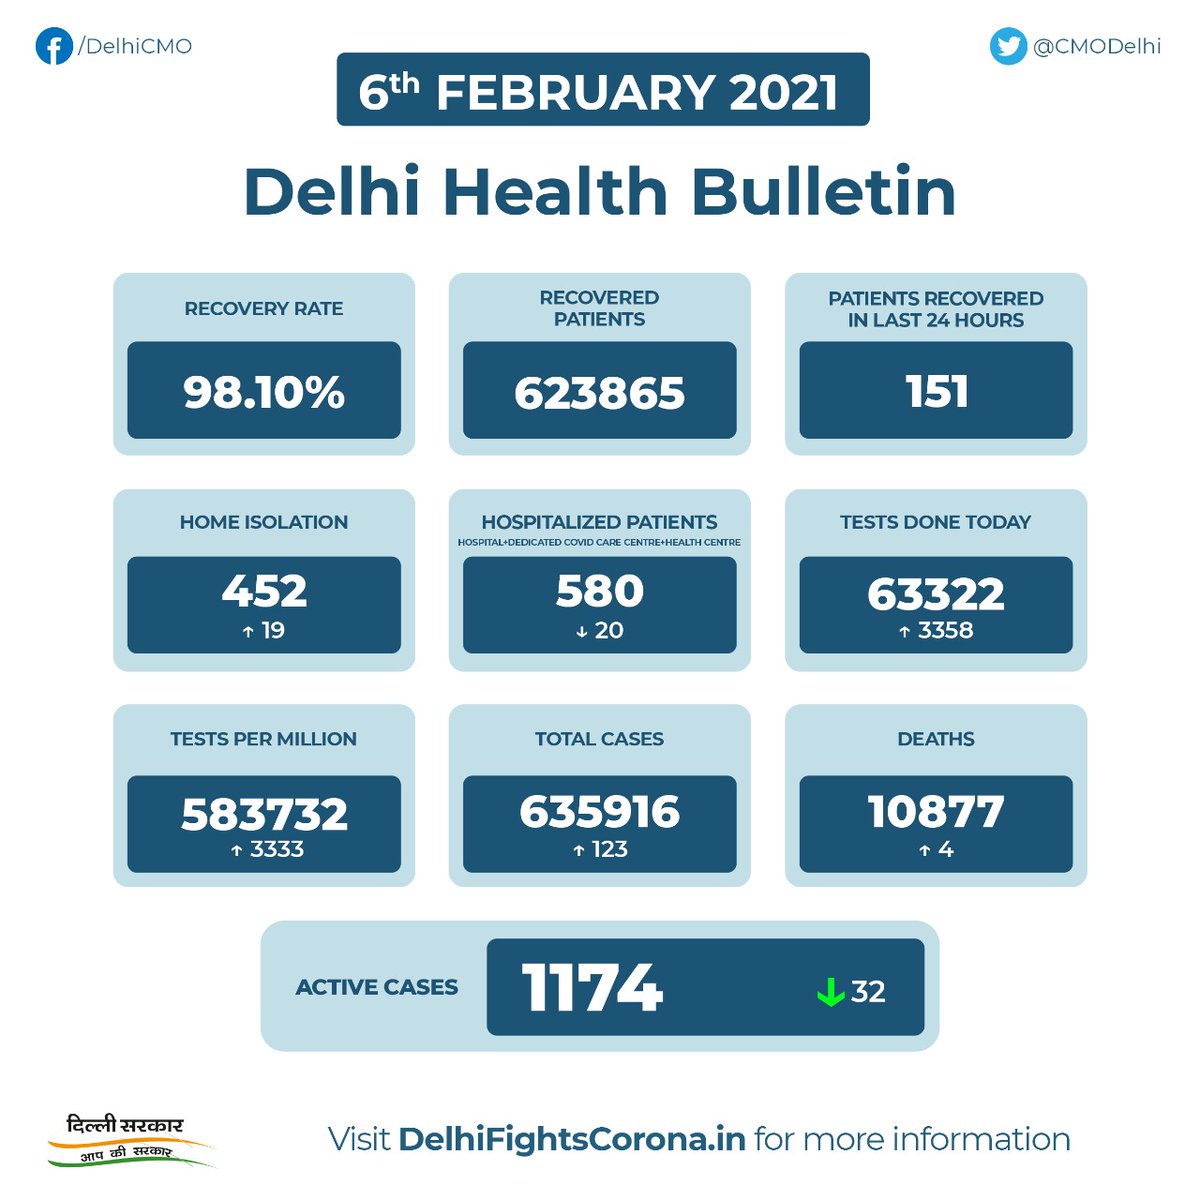 Cmo Delhi Delhi Health Bulletin 6th February 21 Delhifightscorona